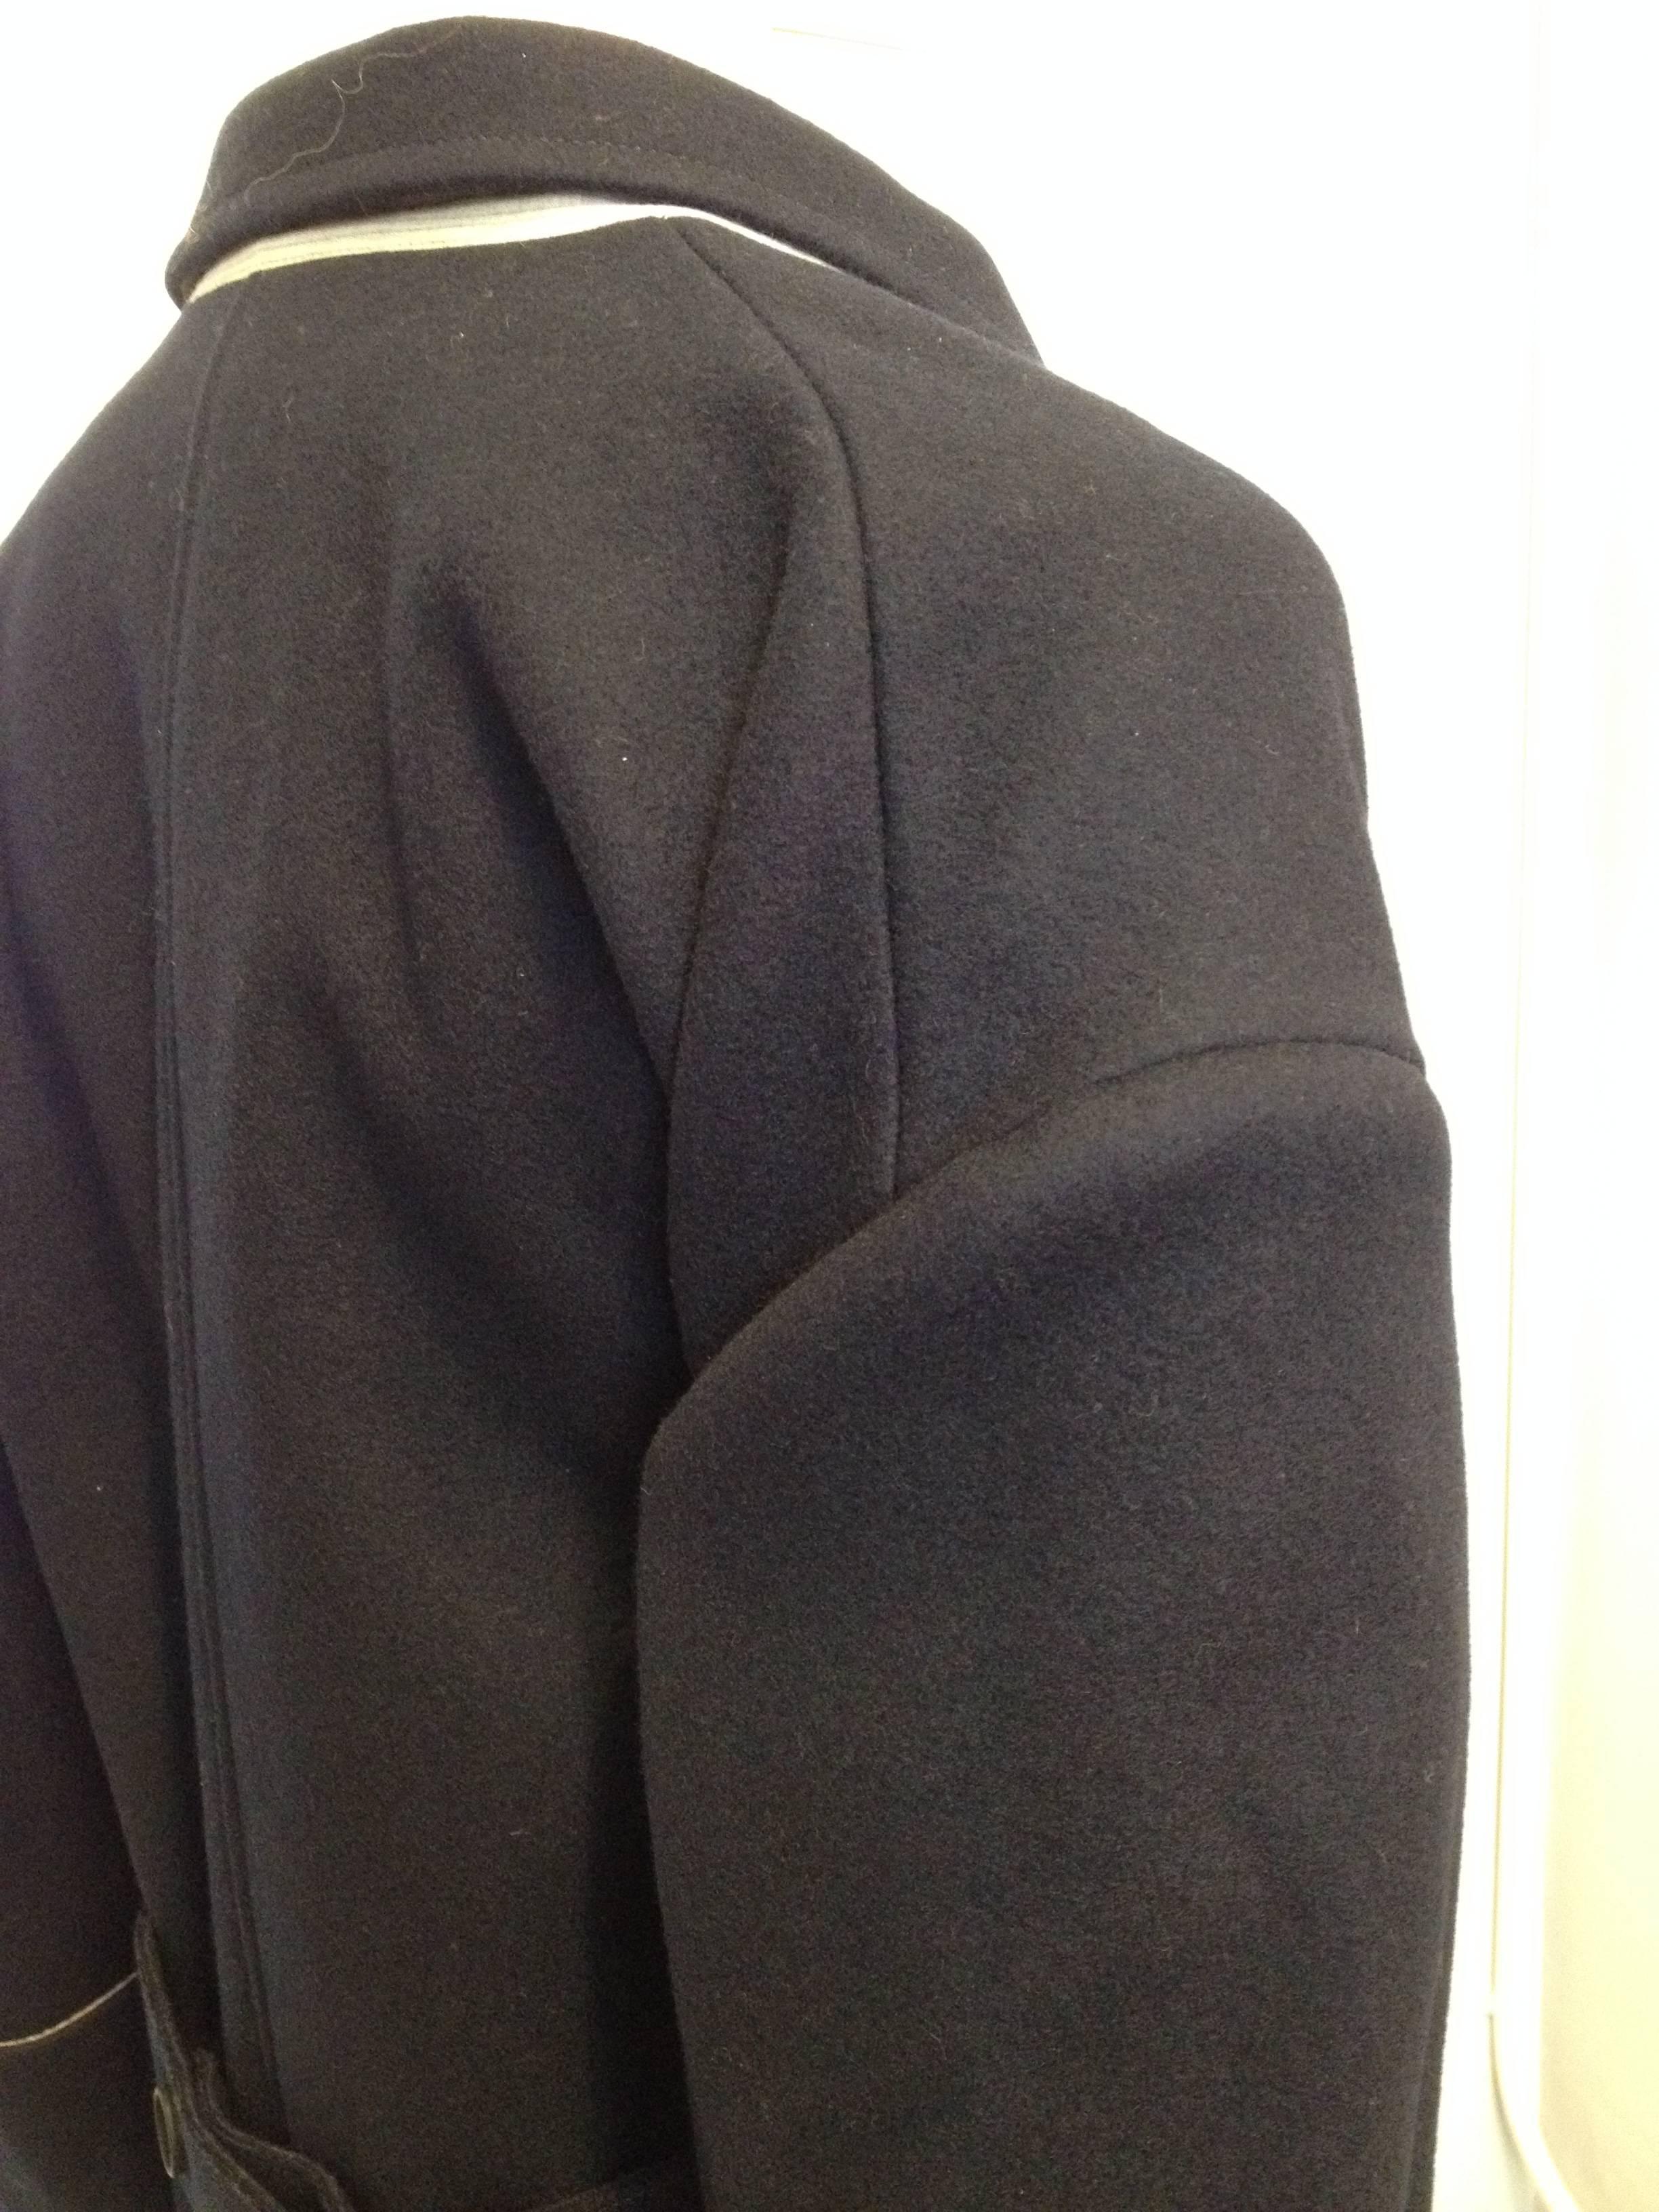 Balenciaga Navy Wool Coat Size 38 (6) 1